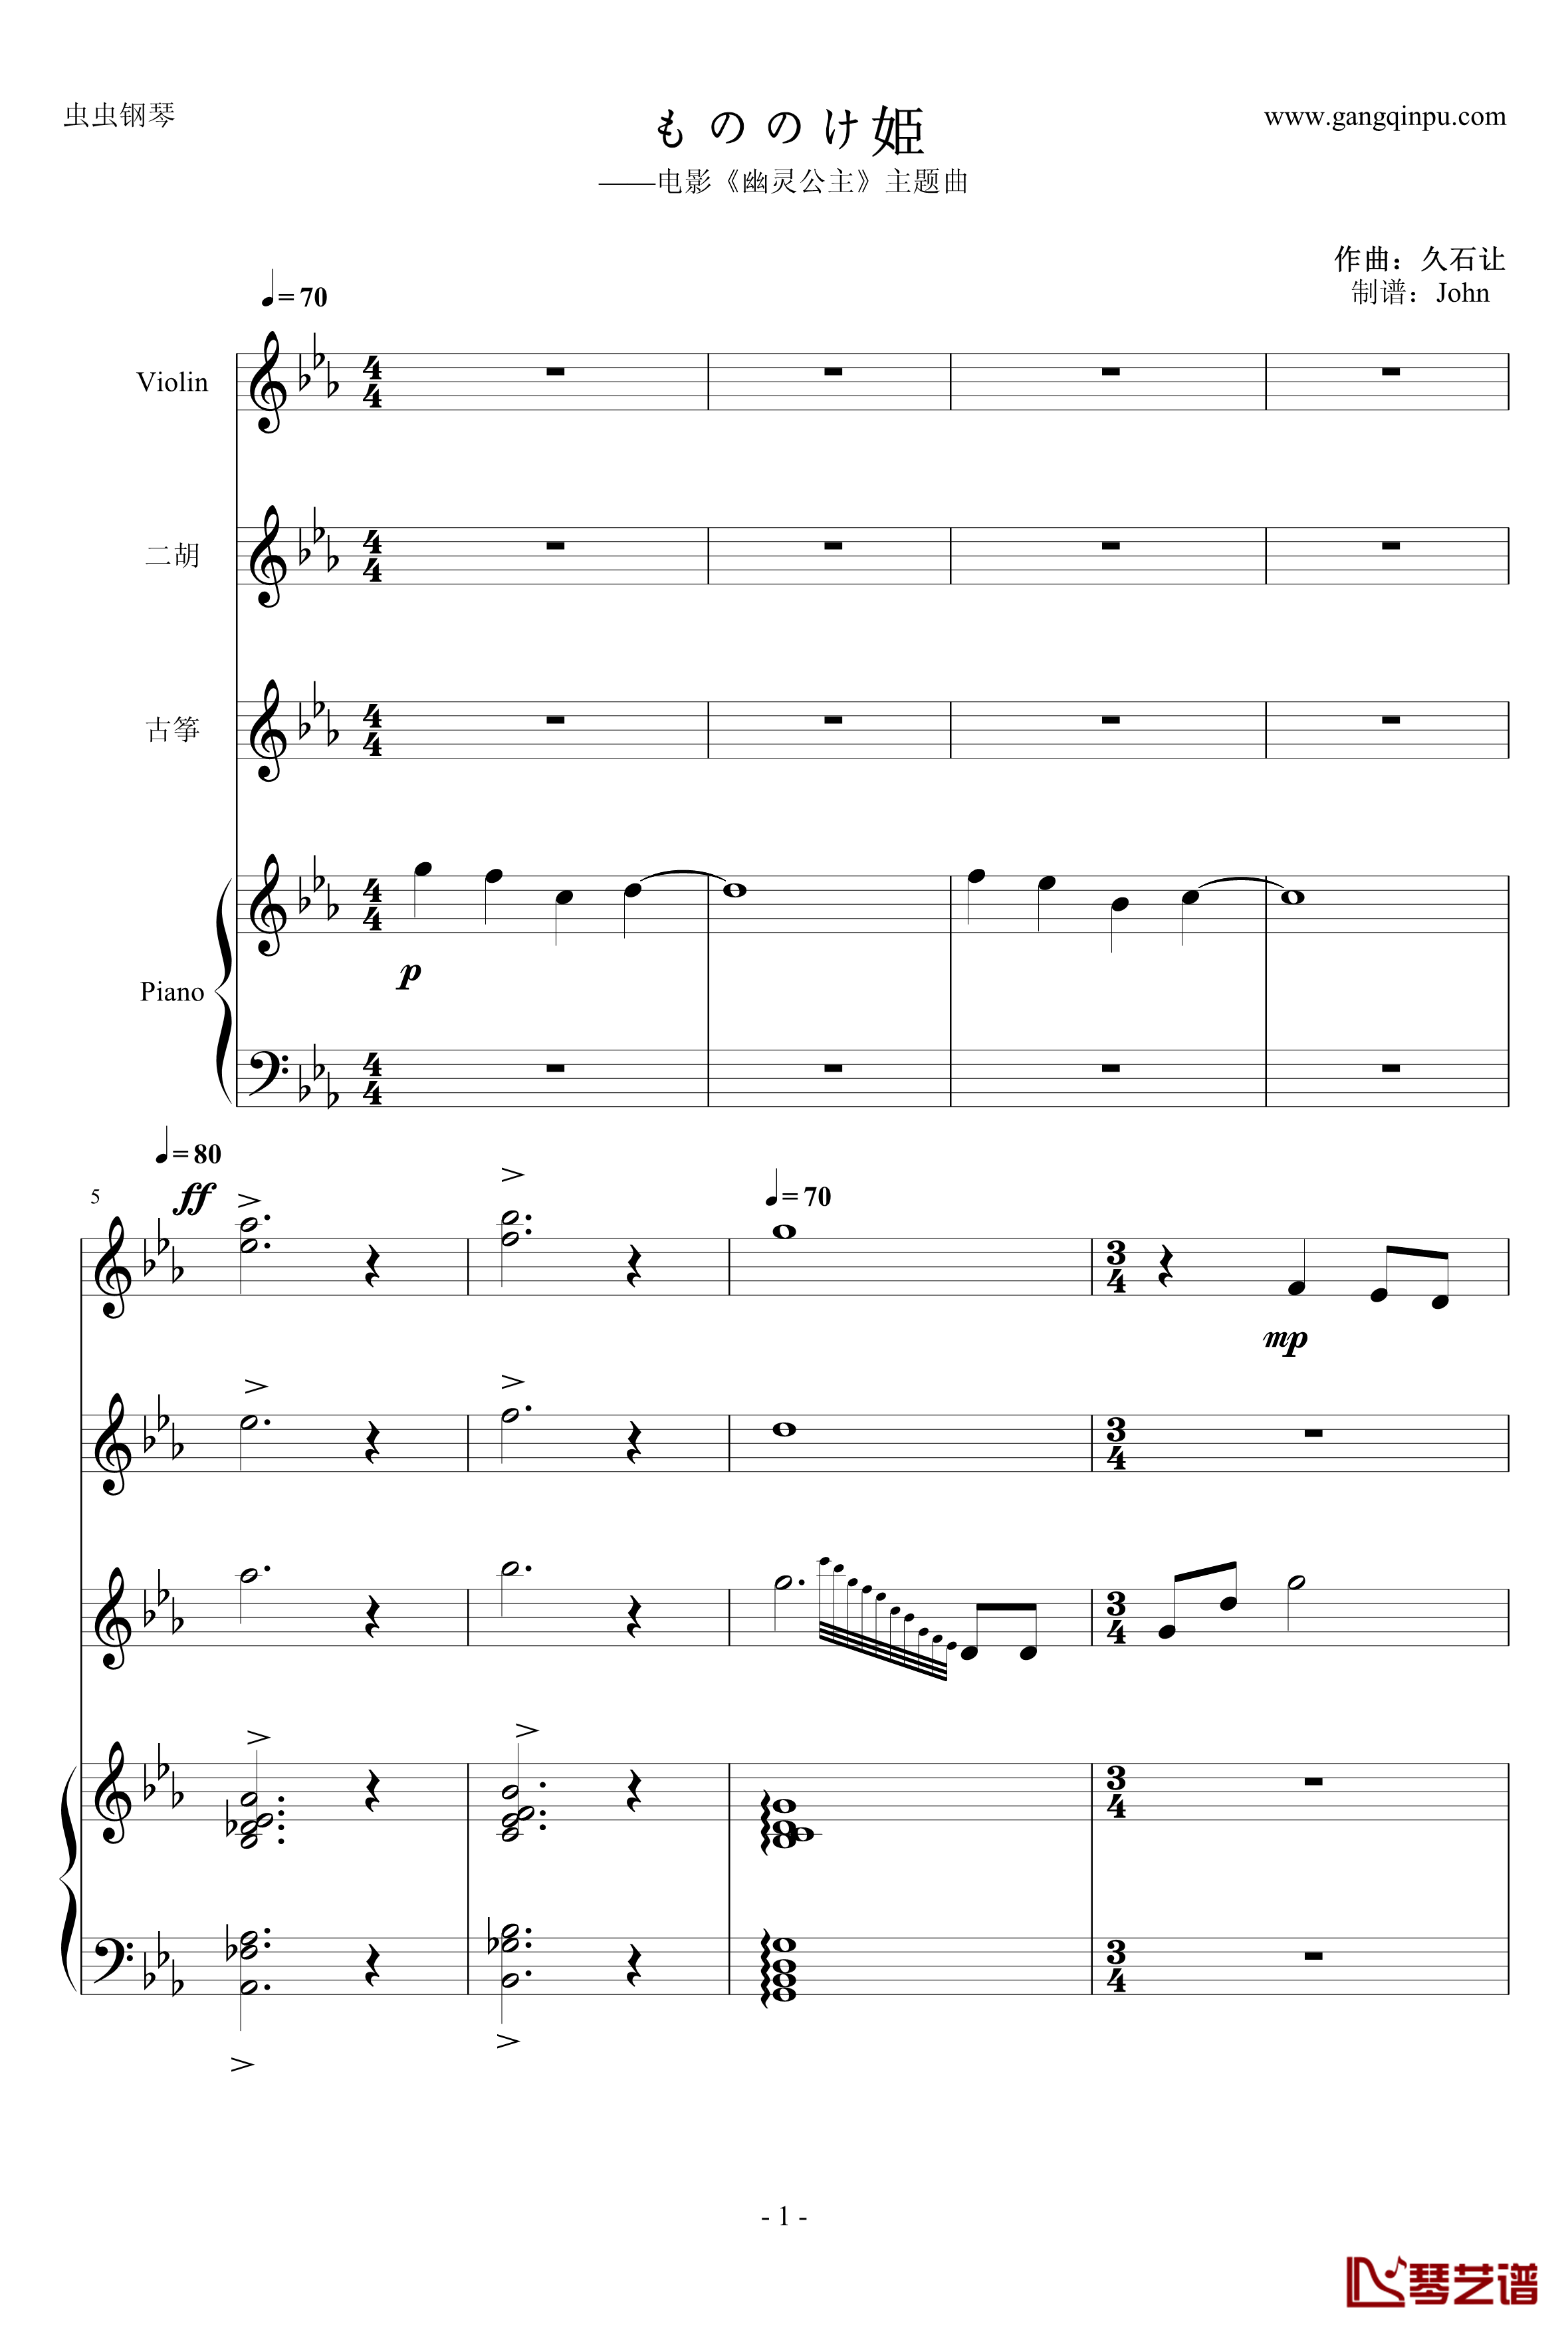 幽灵公主钢琴谱-合奏版总谱-二胡、古筝、小提琴、钢琴-久石让1